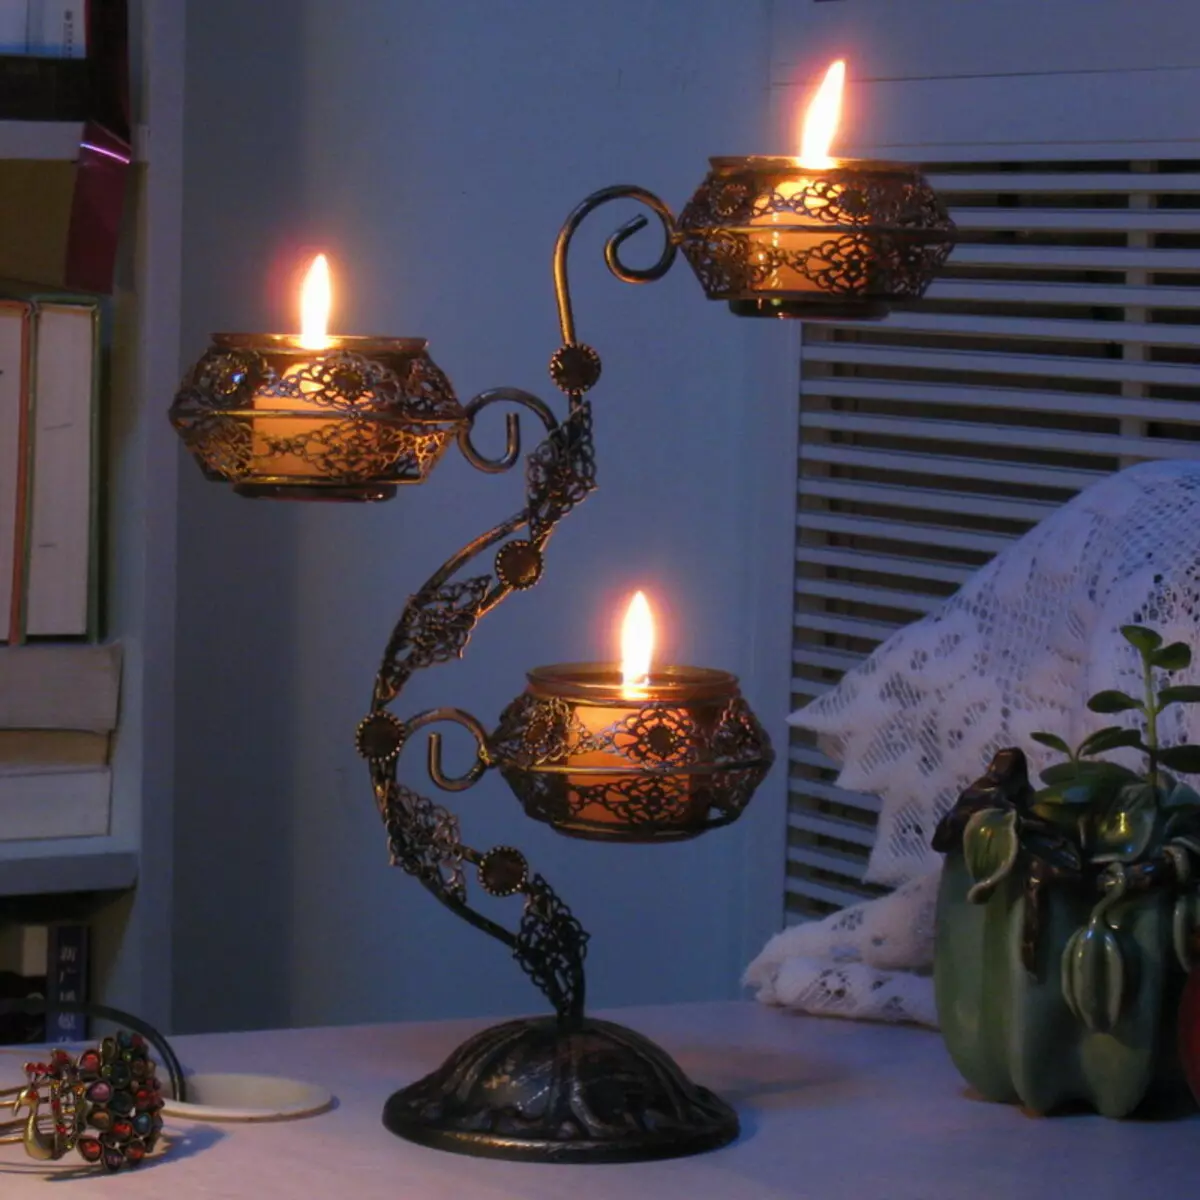 شمعدان فلزی: شمعدان سیاه و سفید فلزی و طلا، یک شمع و 5 شمع، به شکل گوزن و دیگر شمعدان های تزئینی آهن 13157_5